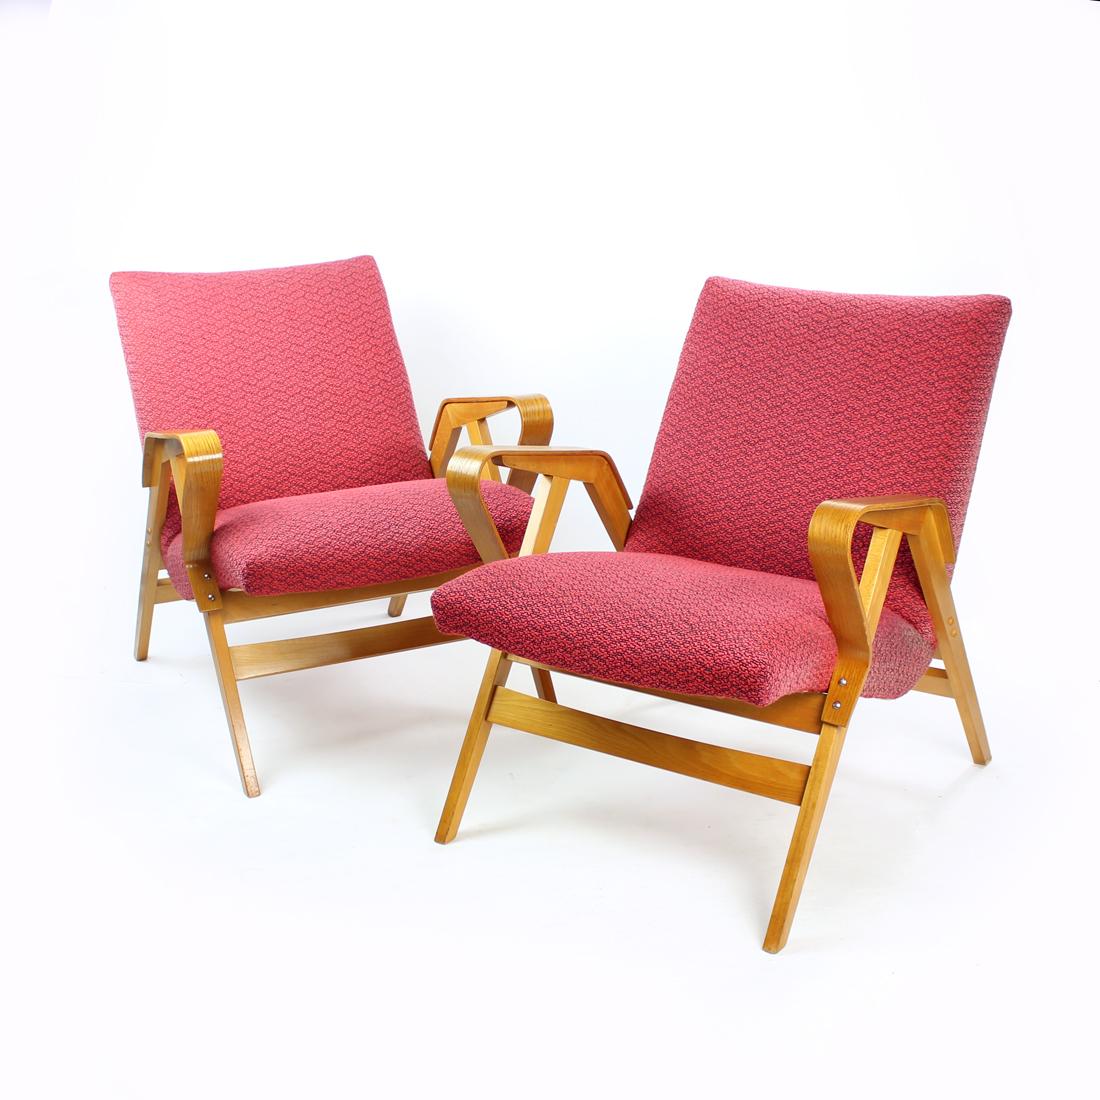 Magnifique fauteuil produit par la société Tatra en Tchécoslovaquie dans les années 1960. Le Label original est encore attaché. Les chaises sont un modèle bien connu et confortable produit en Tchécoslovaquie. Conçu à partir d'une construction en